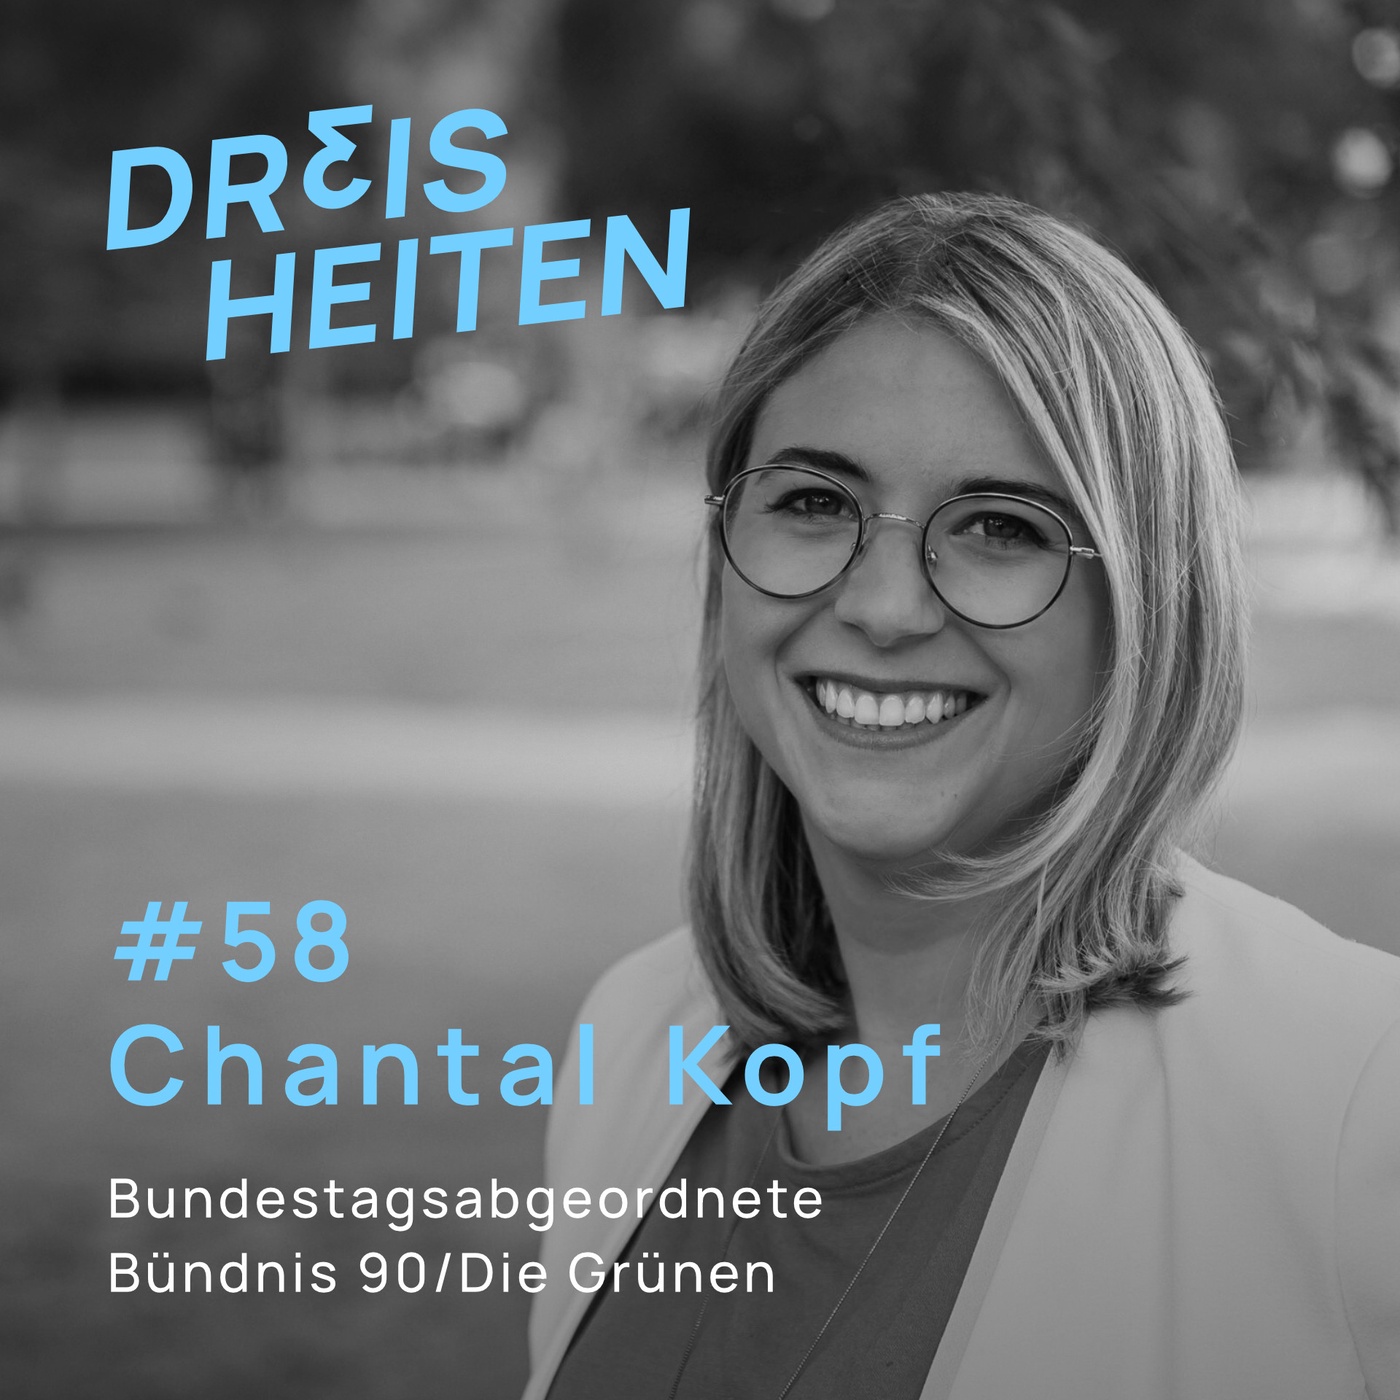 #58 - Chantal Kopf - Bundestagsabgeordnete Bündnis 90/Die Grünen - Lebenserfahrung & Weisheiten